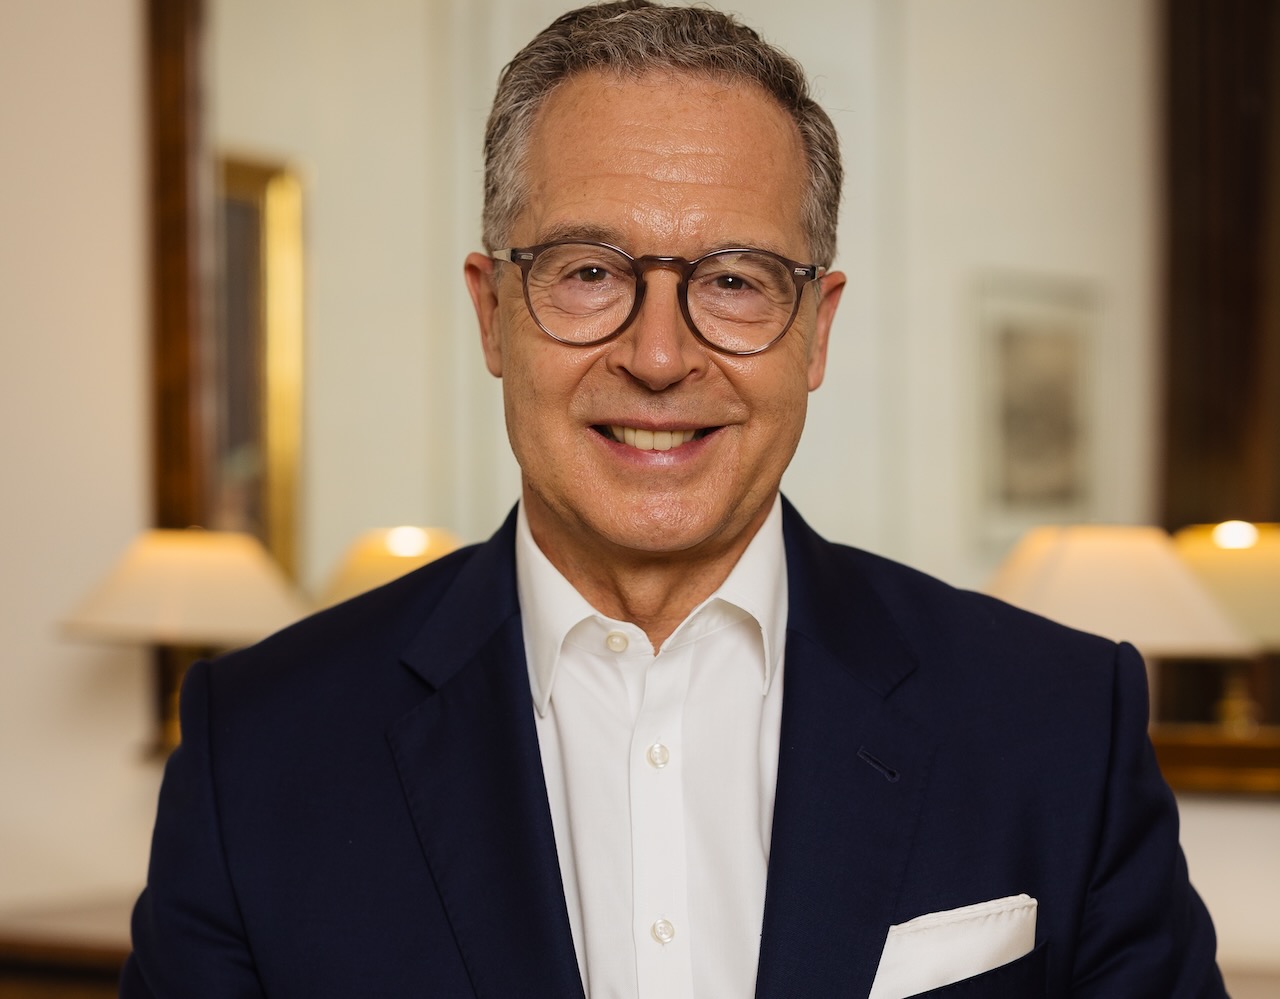 Dr. Holger Sepp, Hauck Aufhäuser Lampe Privatbank